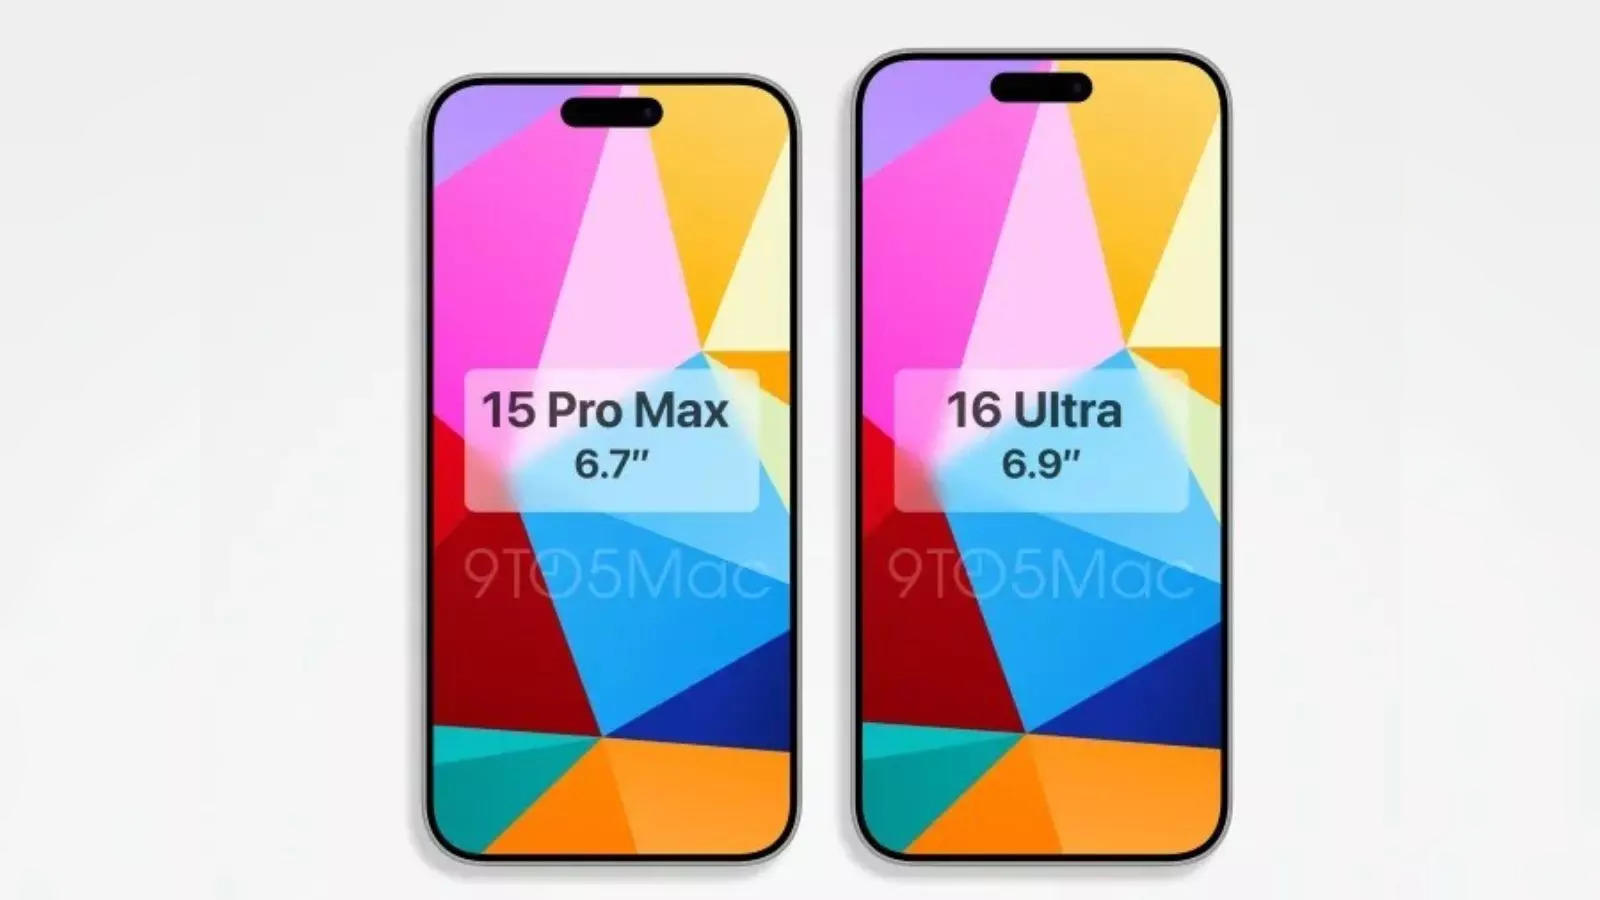 iPhone 15 Pro Max: iPhone 16 Pro Max, iPhone 15 Pro Max's leaked